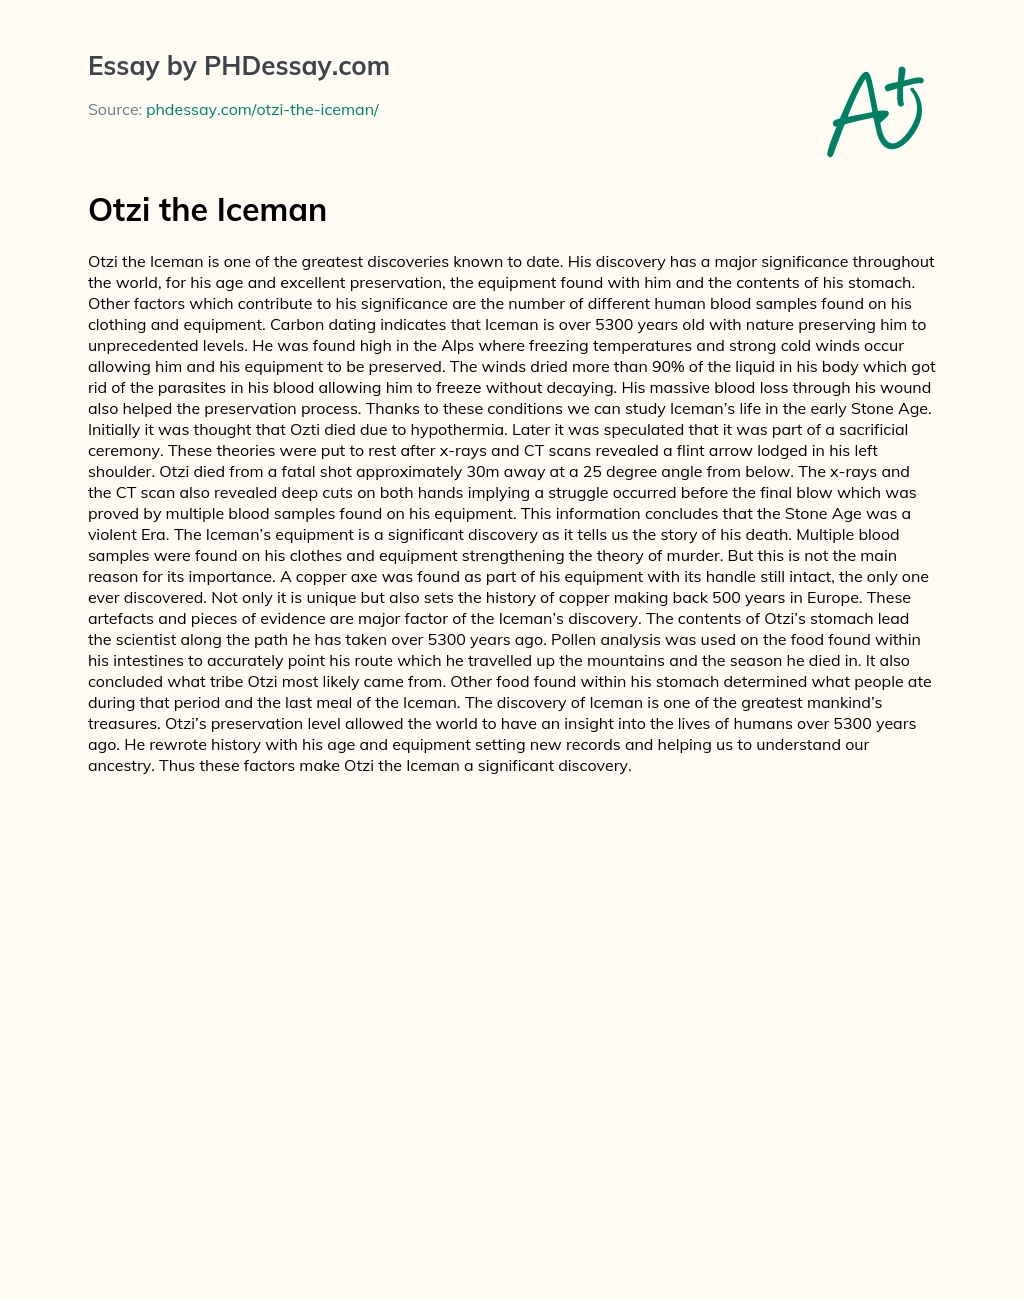 Otzi the Iceman essay